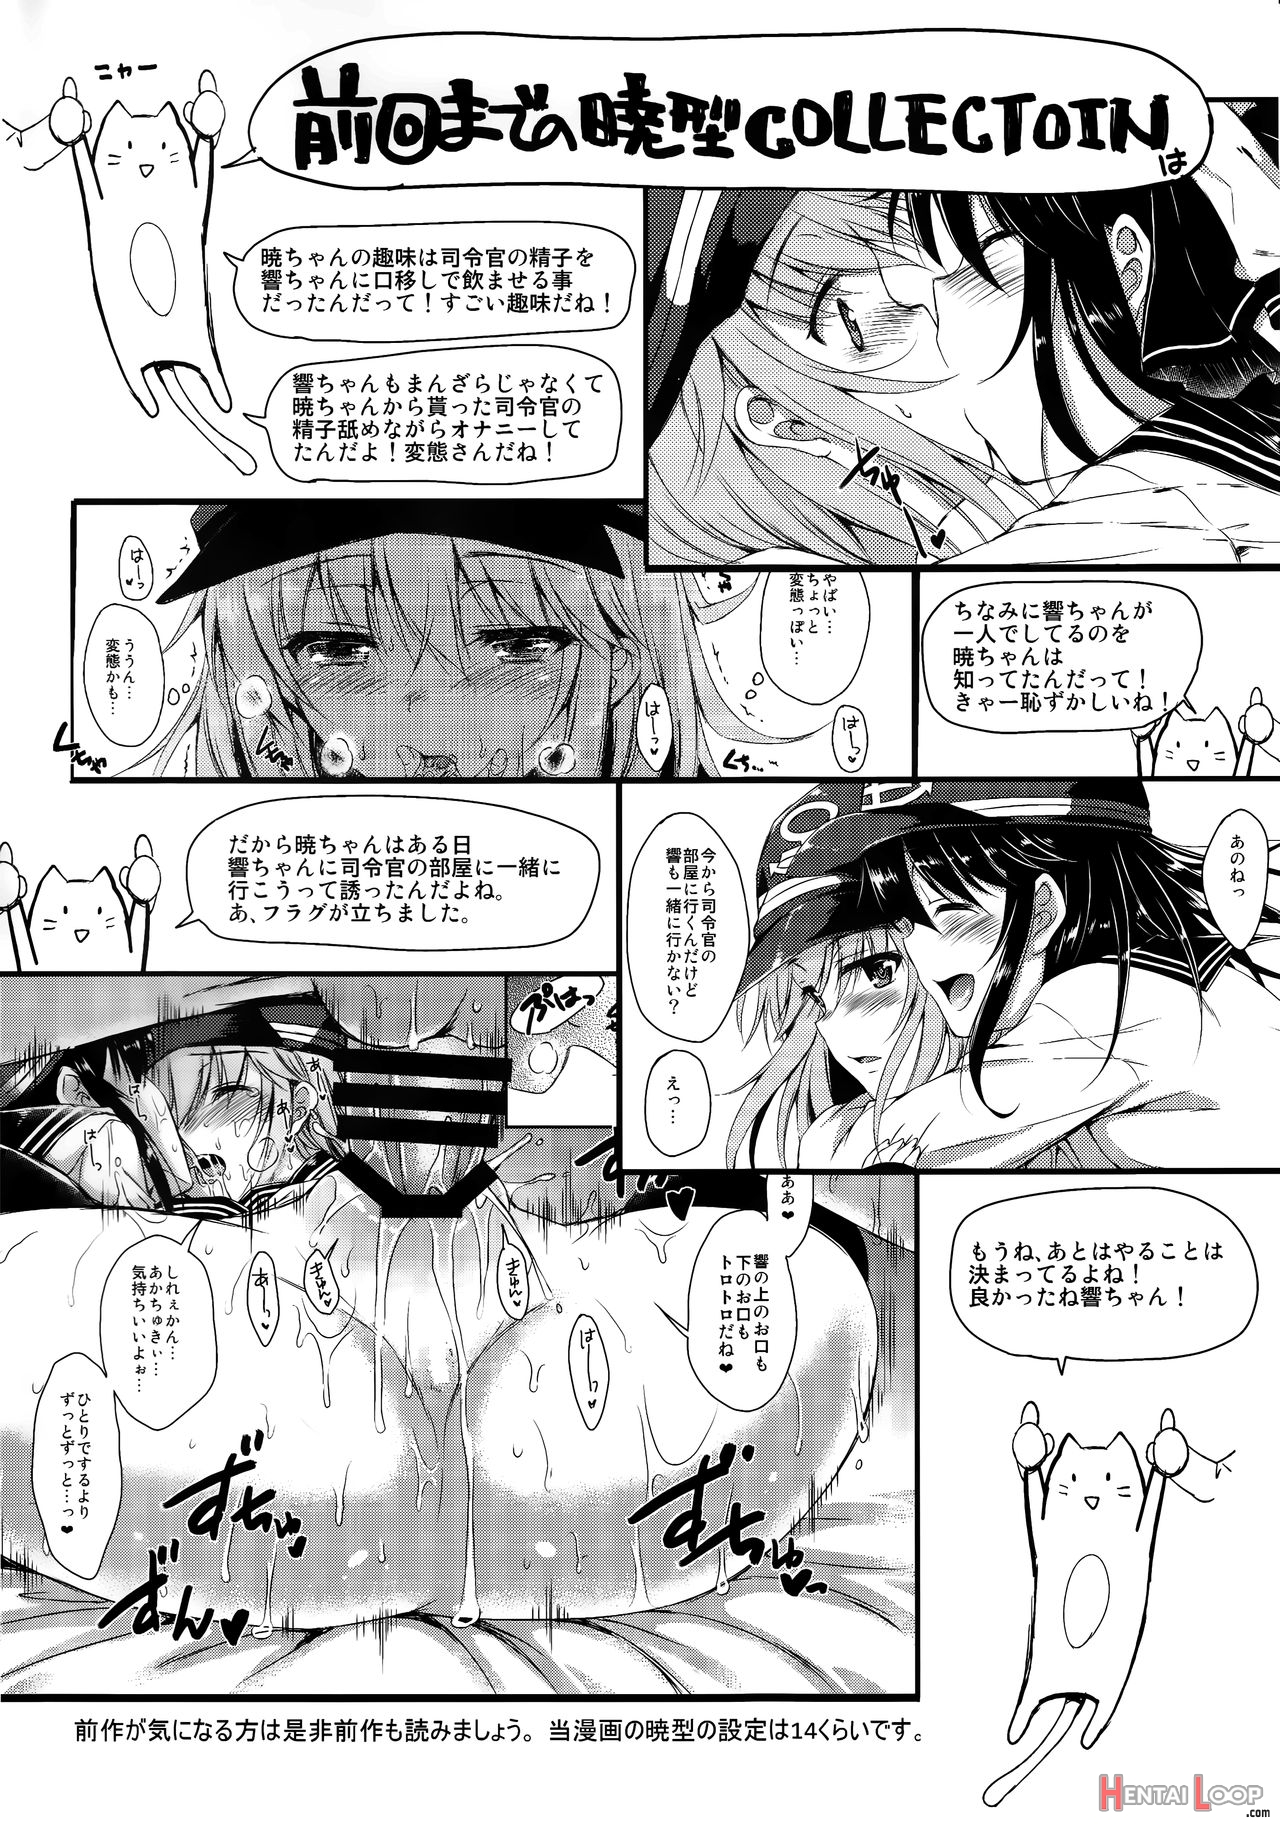 Akatsuki-gata Collection+ page 3